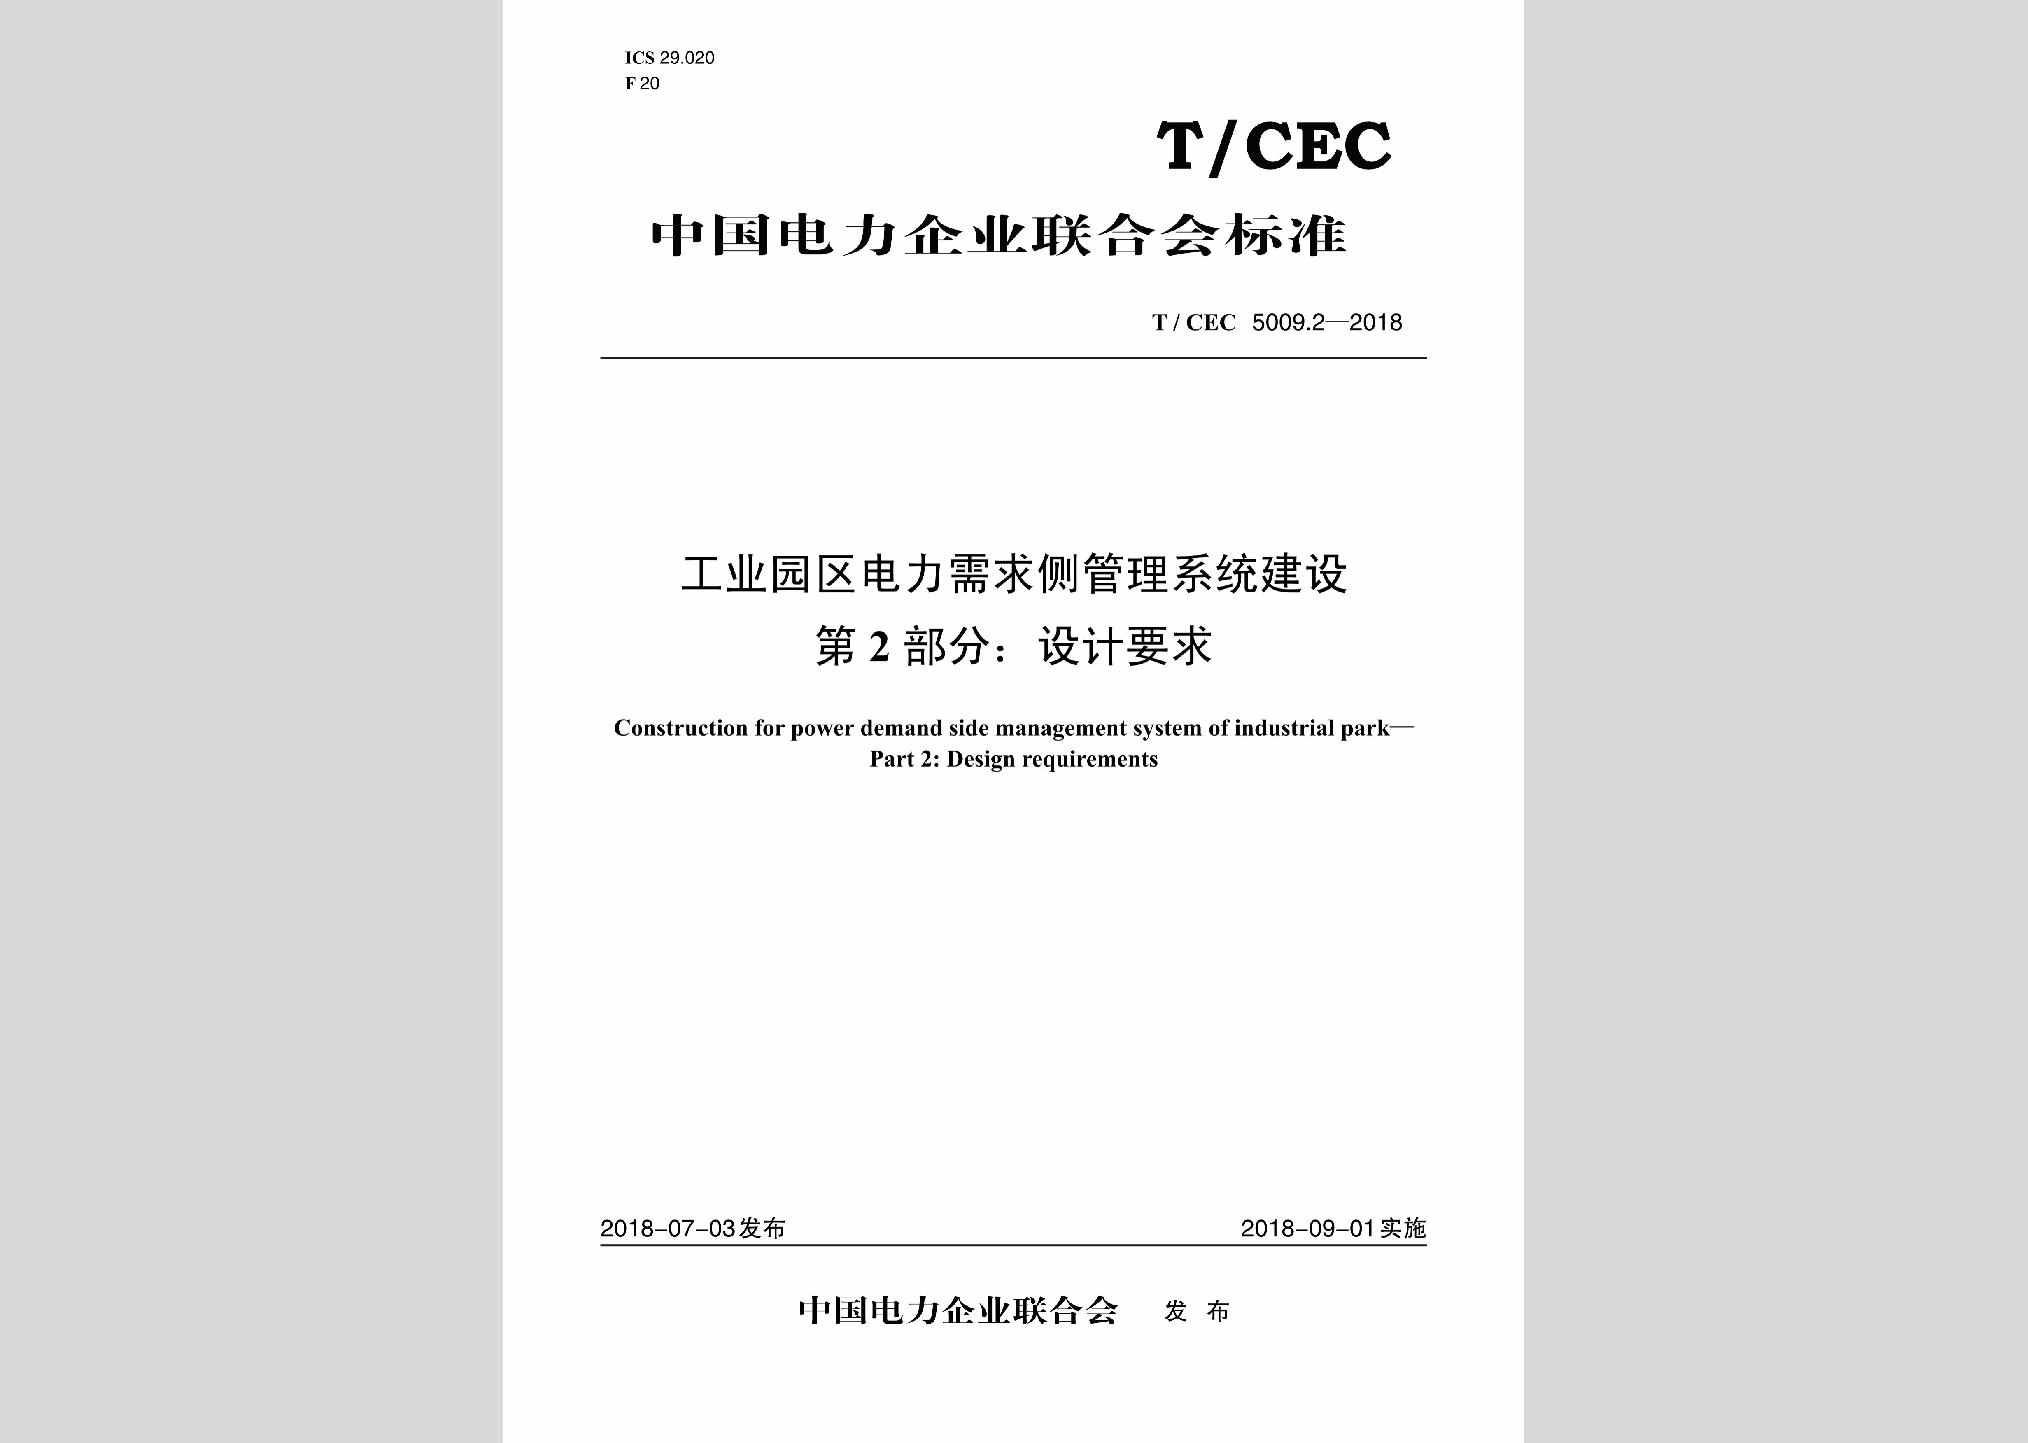 T/CEC5009.2-2018：工业园区电力需求侧管理系统建设第2部分:设计要求